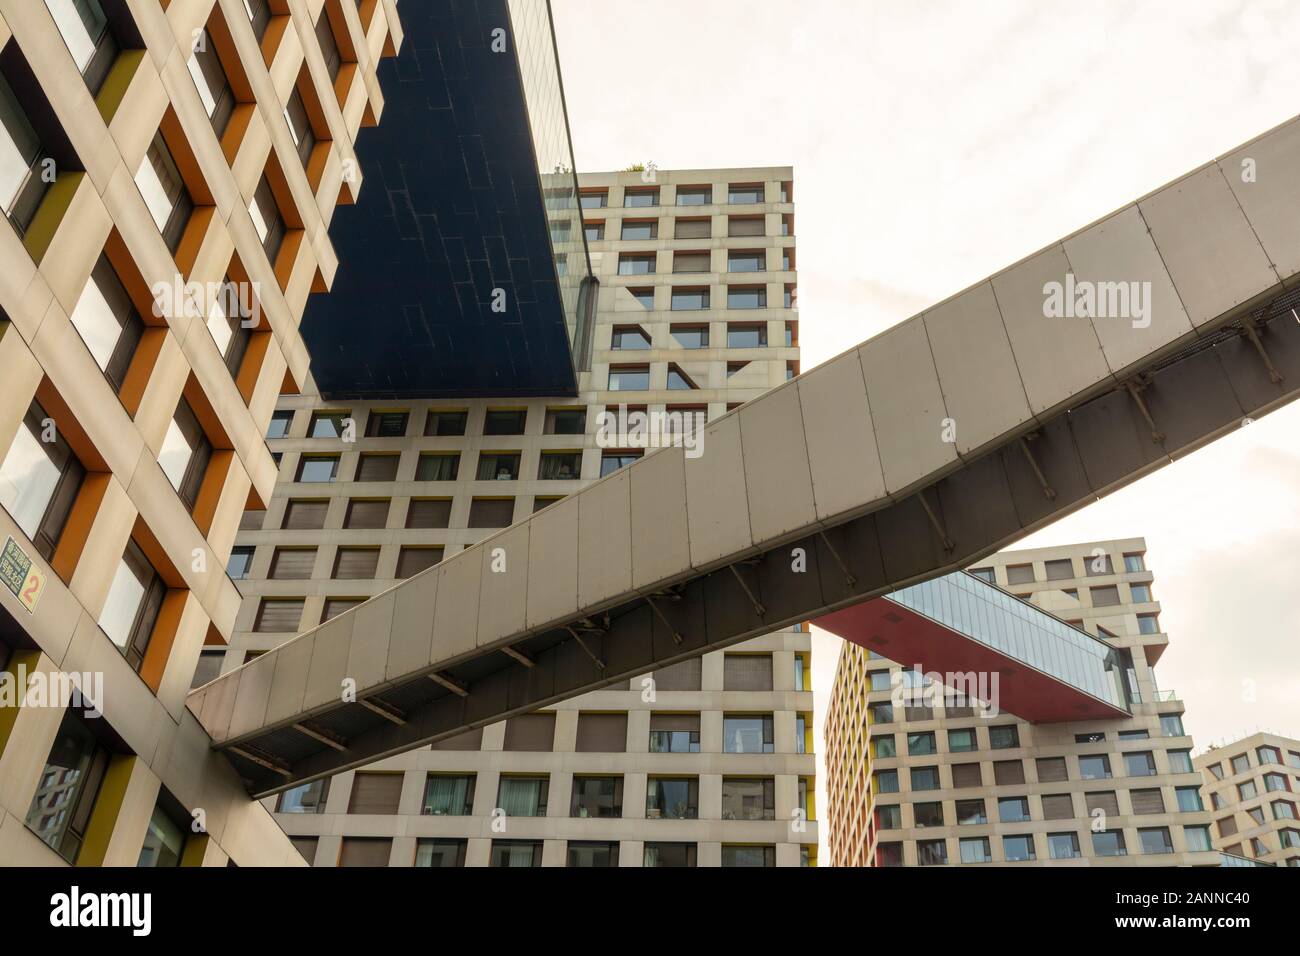 Verknüpfte Hybrid Gebäudekomplex in Beijing, China gebaut, von Steven Holl entworfen Stockfoto